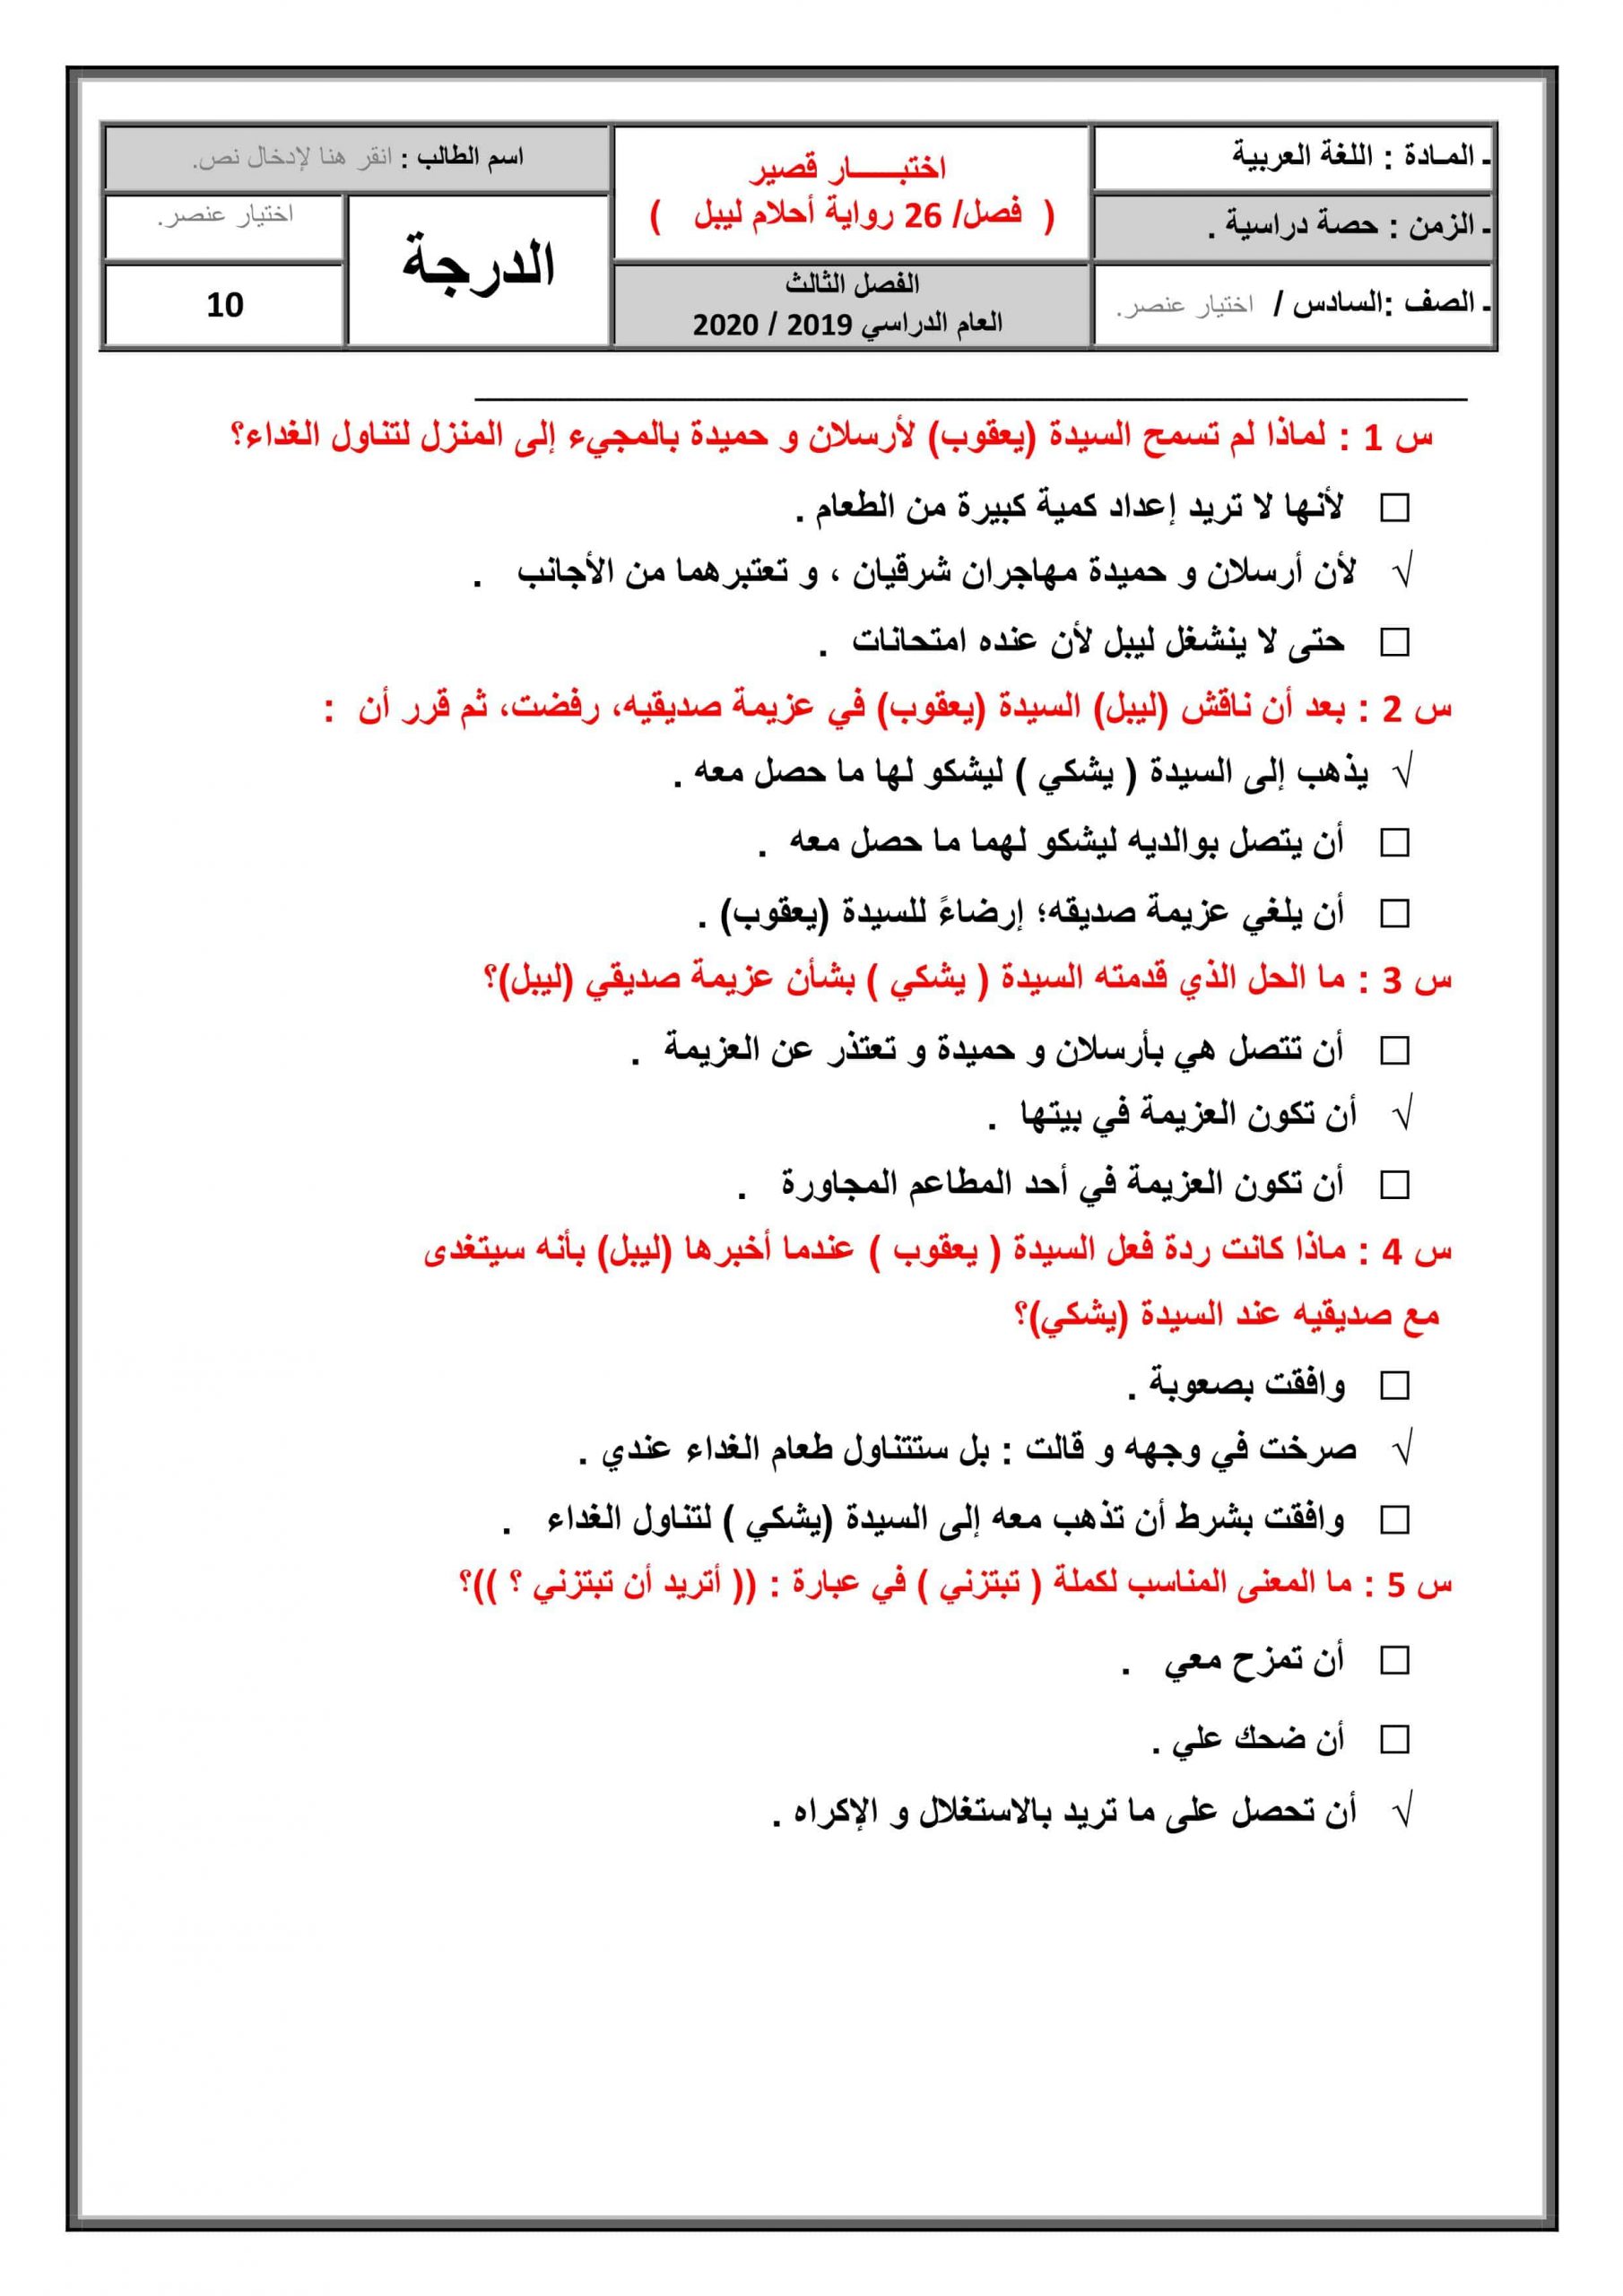 حل اختبار قصير لرواية أحلام ليبل السعيدة الفصل السادس والعشرون الصف السادس مادة اللغة العربية 